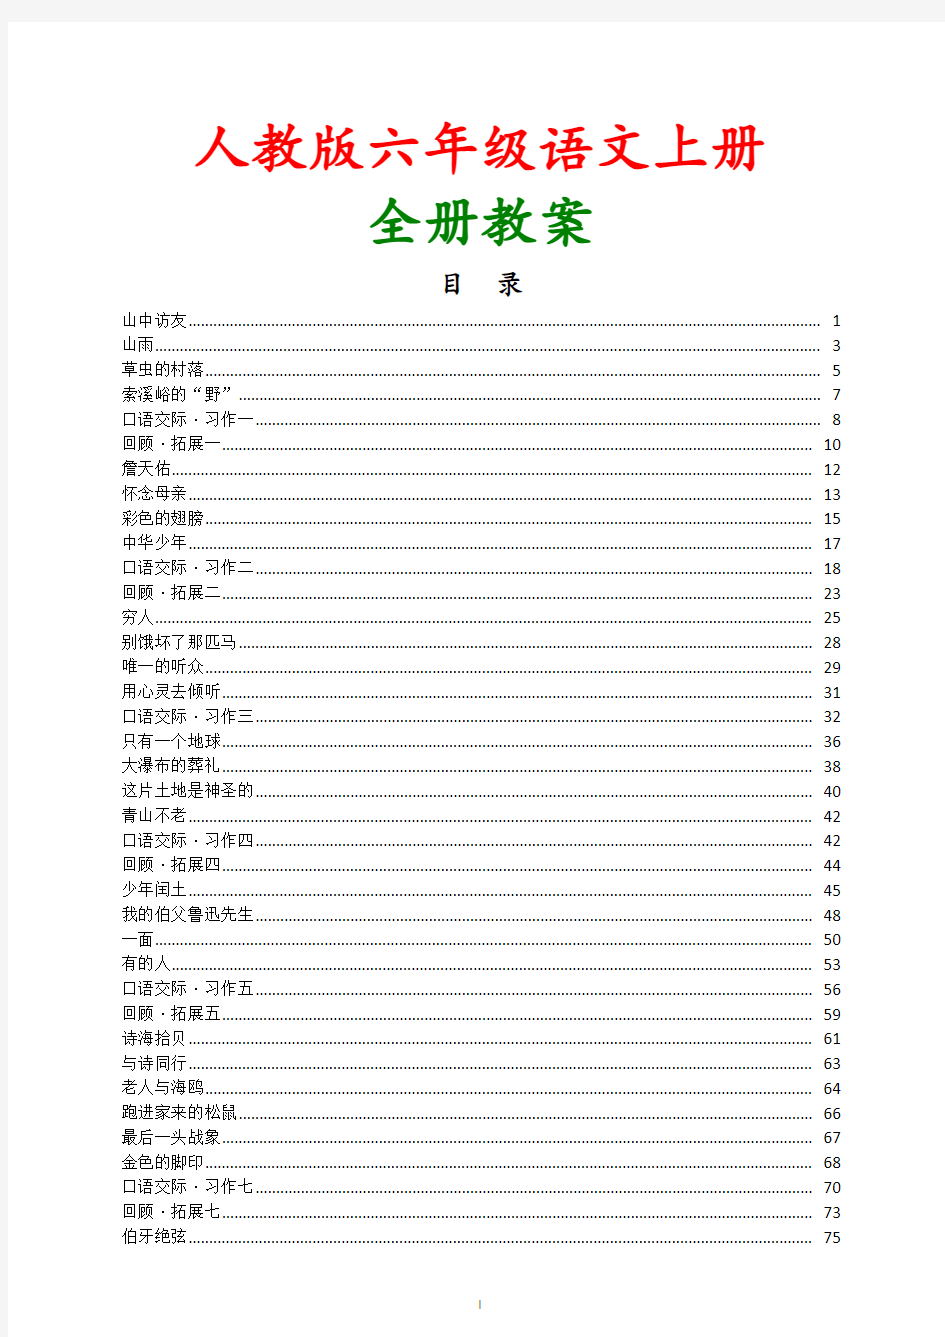 【人教版】2018年小学语文六年级(上册)全册优秀教案